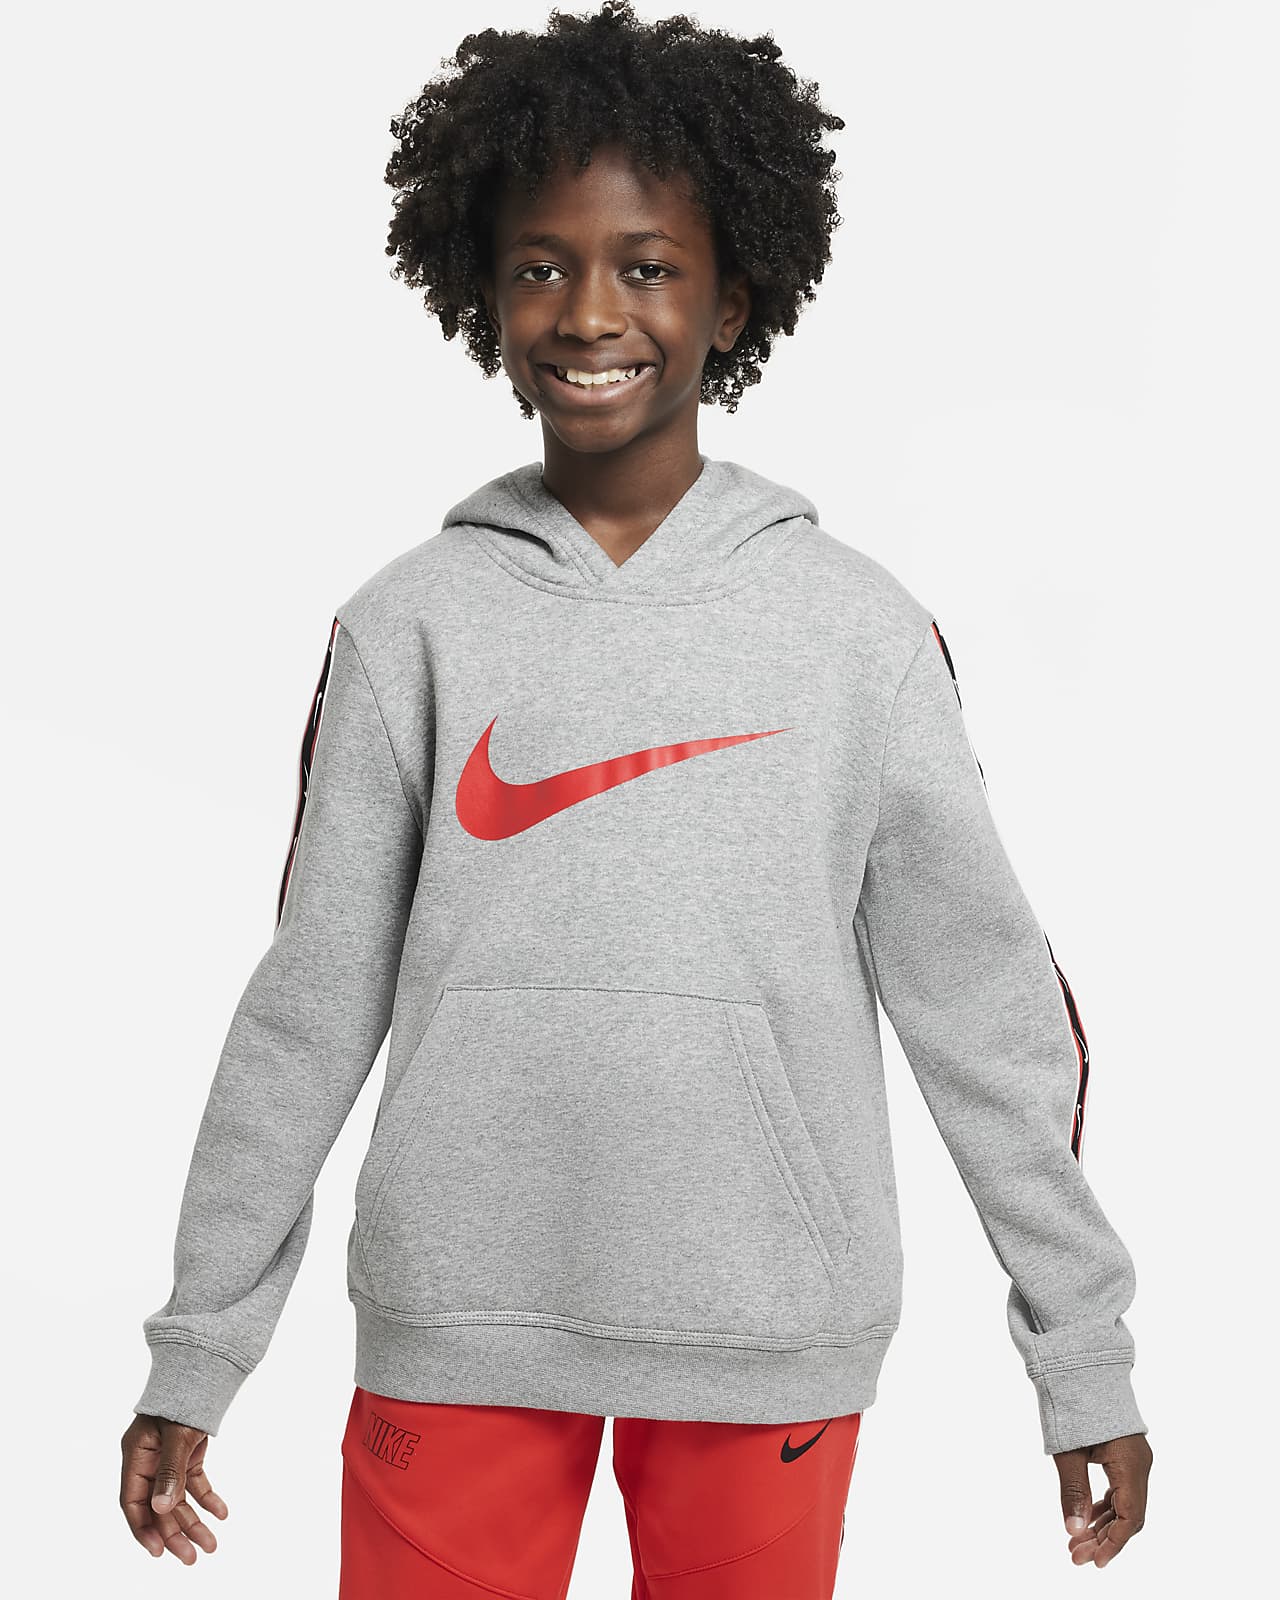 Nike Repeat (Boys') Fleece Pullover Hoodie. Nike LU